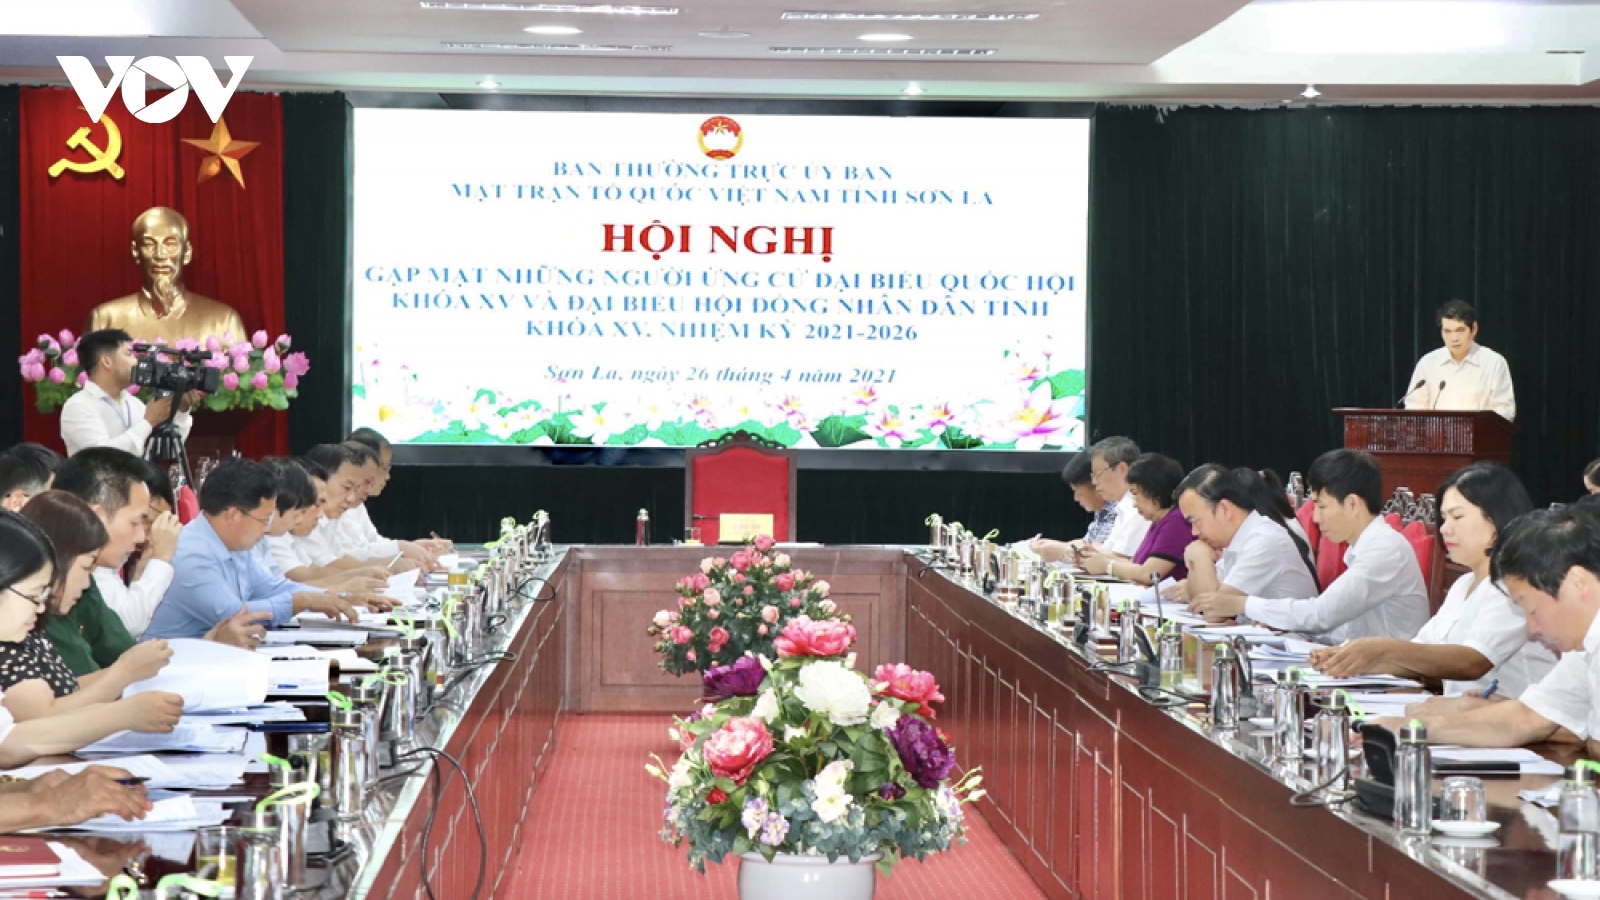 Sơn La gặp mặt người ứng cử đại biểu Quốc hội và HĐND tỉnh